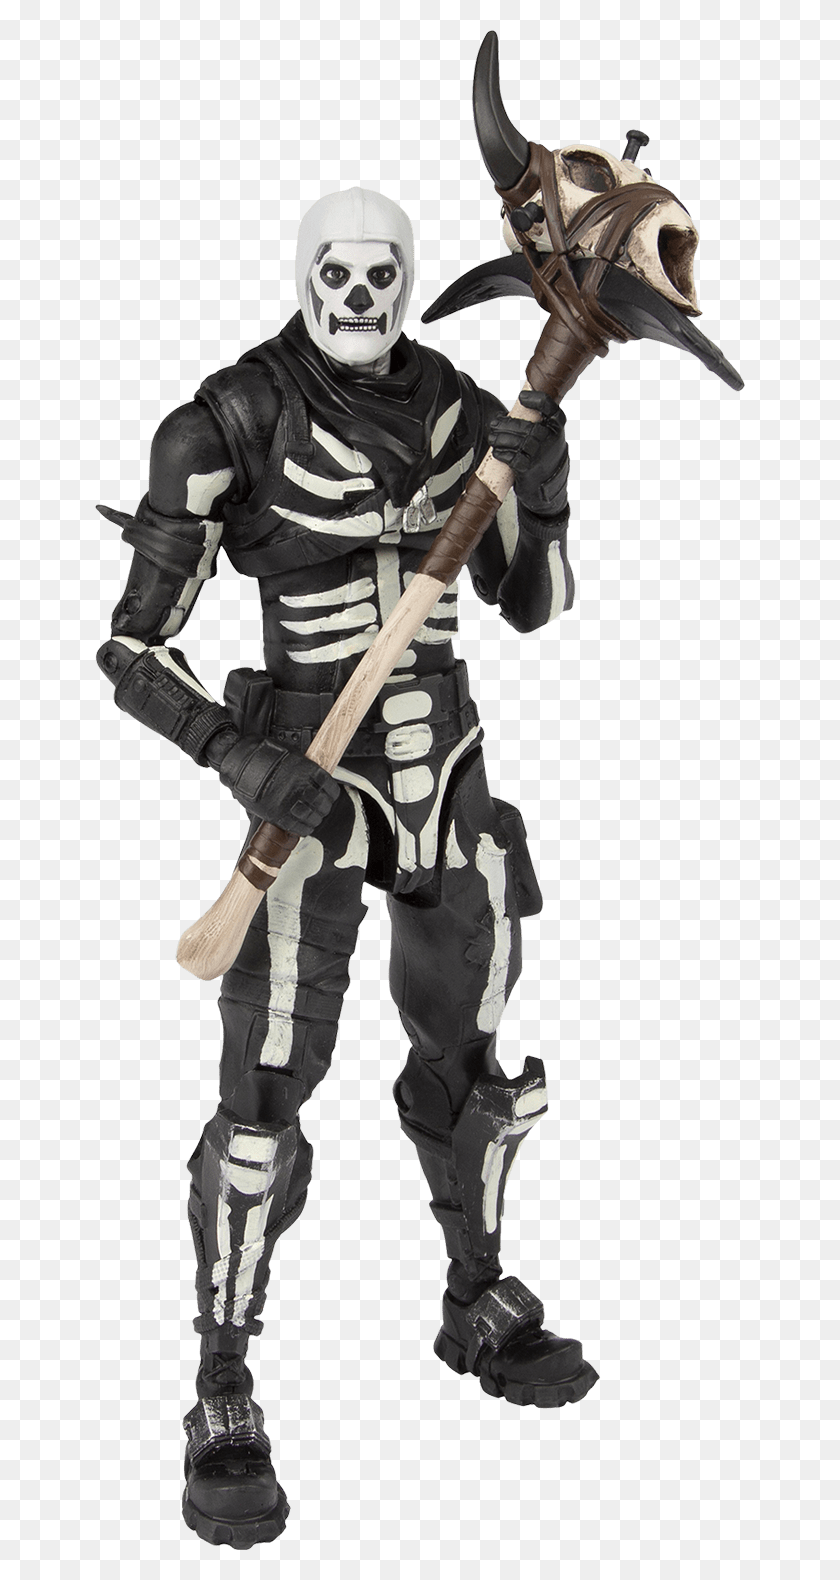 650x1520 Descargar Png Fortnite Figura De Acción Skull Trooper Fortnite Skull Trooper Figura De Acción, Persona, Humano, Ninja Hd Png